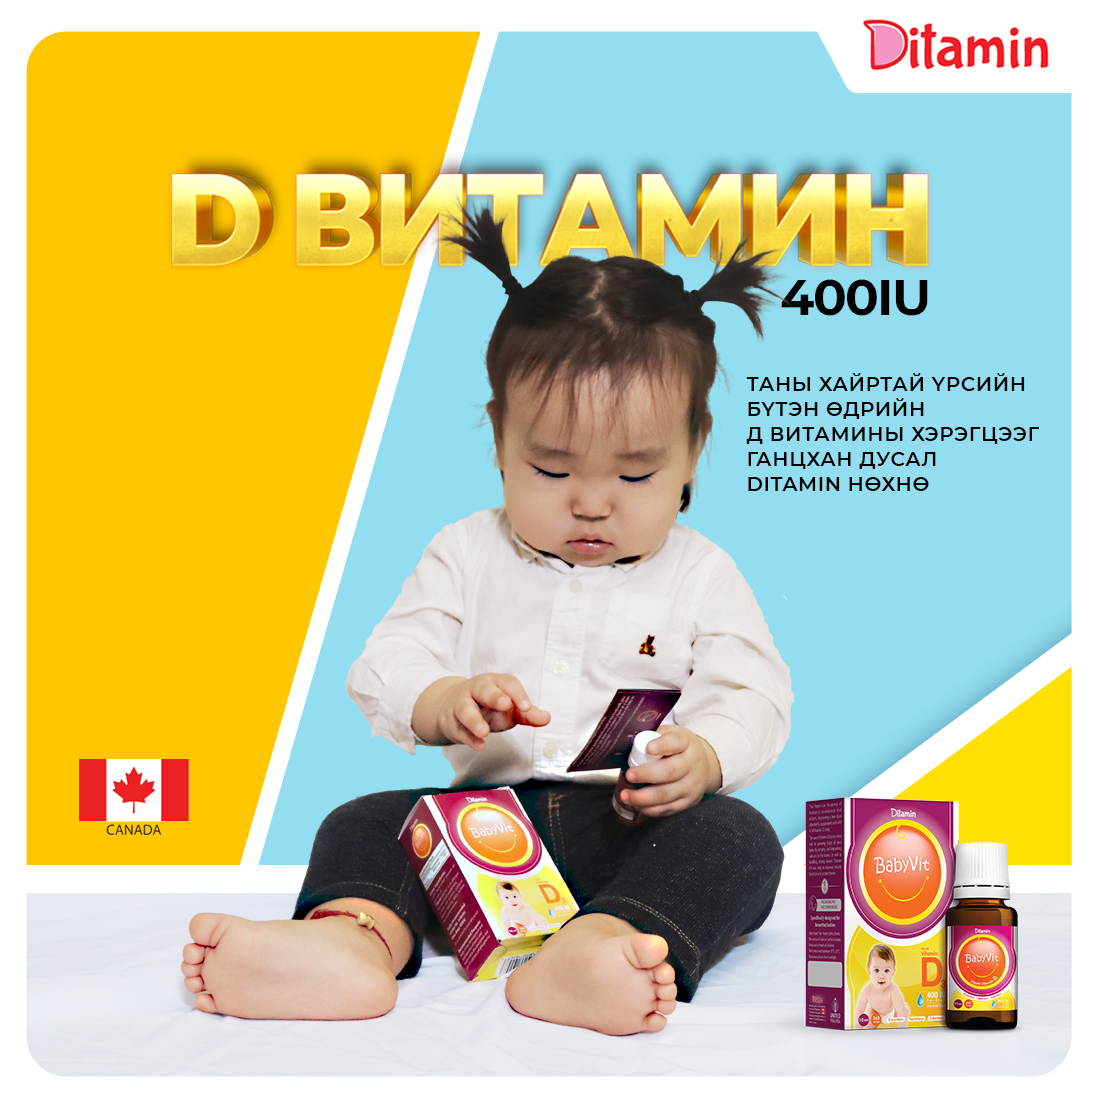 Ямар D витамин хэрэглэх вэ? (фото 2)